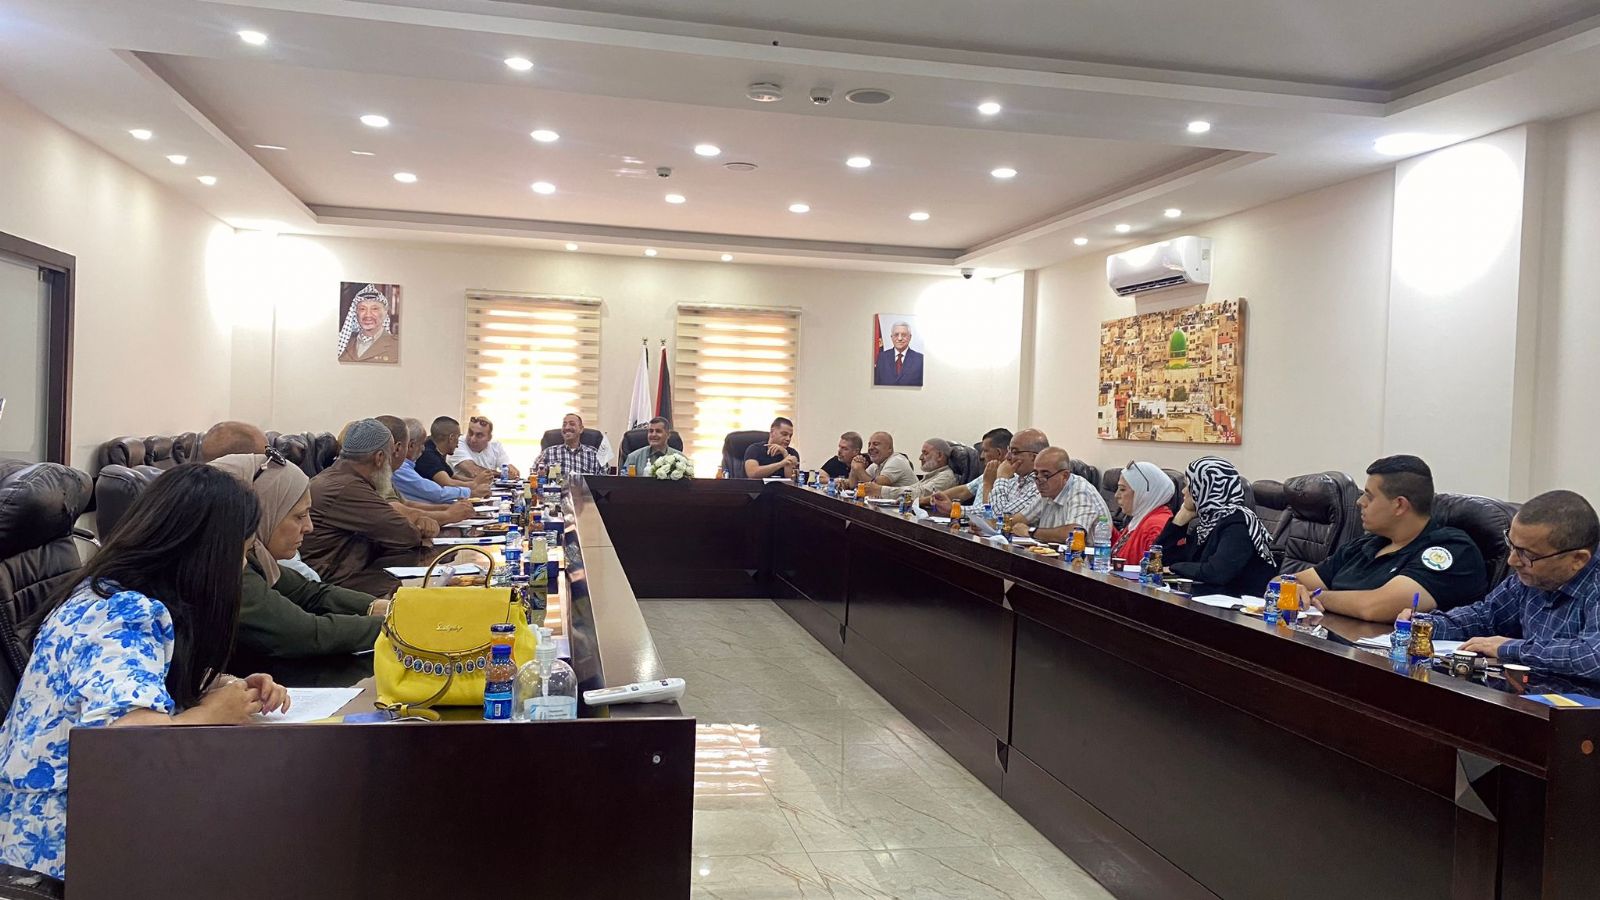 استكمالاً لسلسلة اللقاءات الخاصة بموضوع "السلم الأهلي" قامت هيئة التوجيه السياسي بعقد لقاء في مقر ملتقى رجال أعمال نابلس.